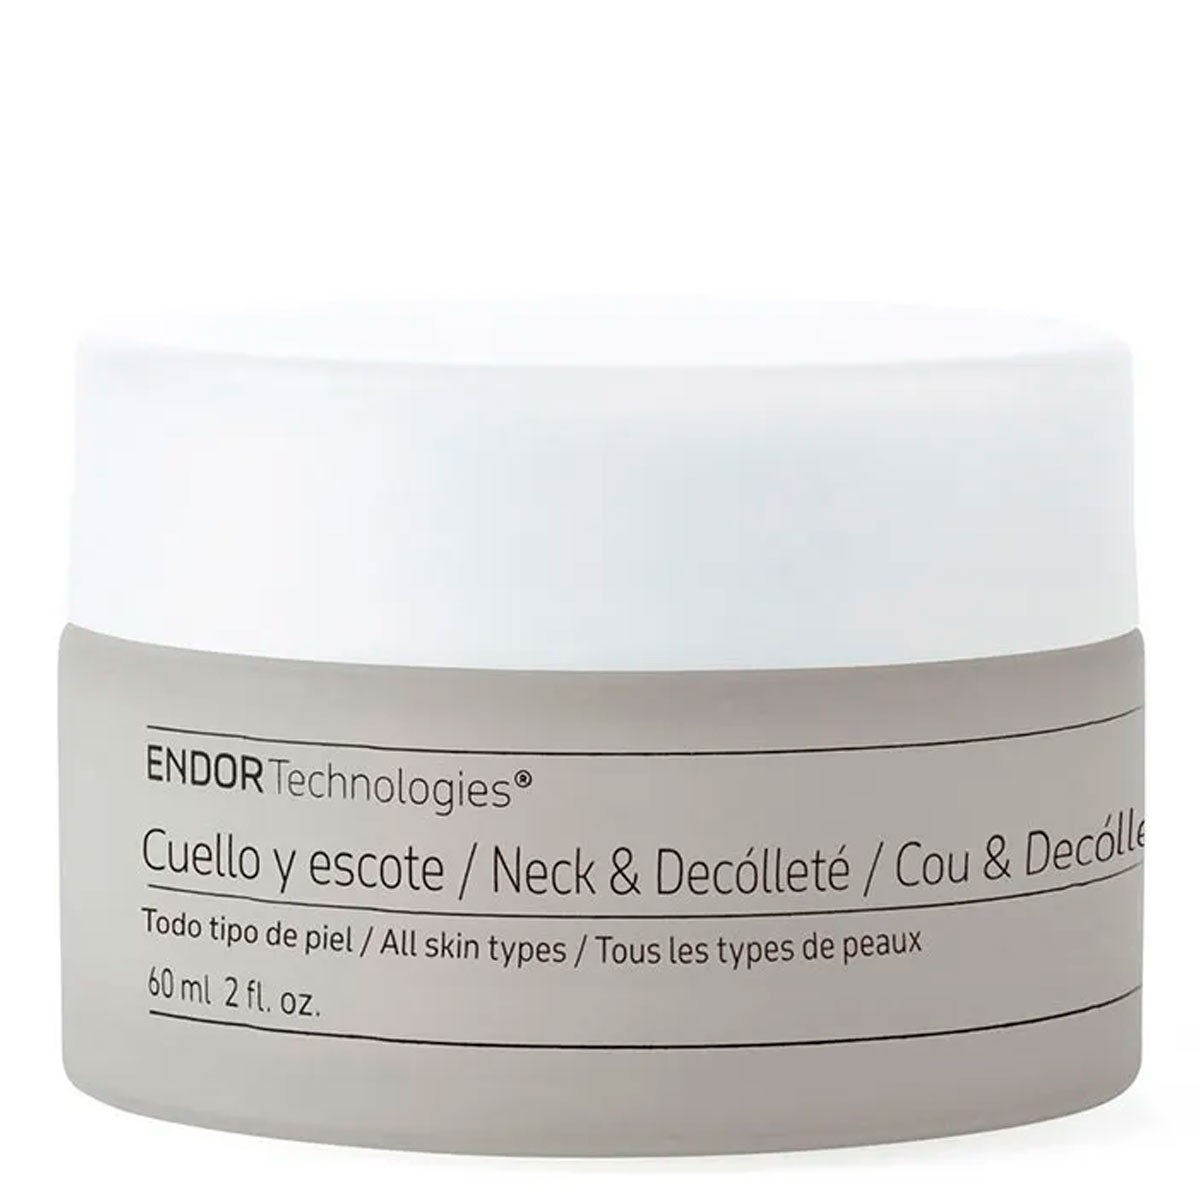 Endor Bioactive Crema de Cuello y Escote - Neck and Décollete Cream